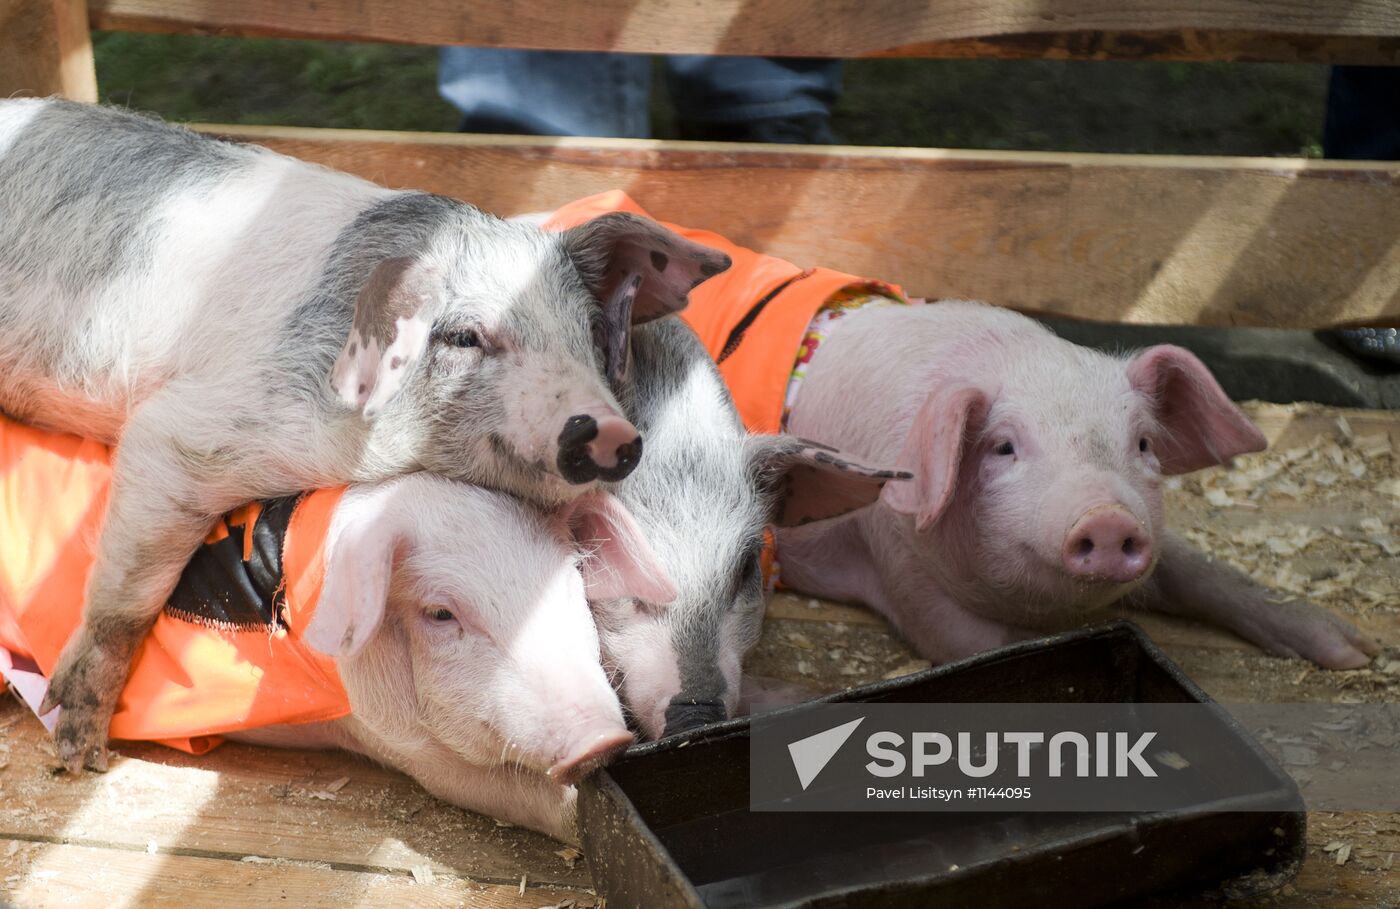 Pig races in Yekaterinburg